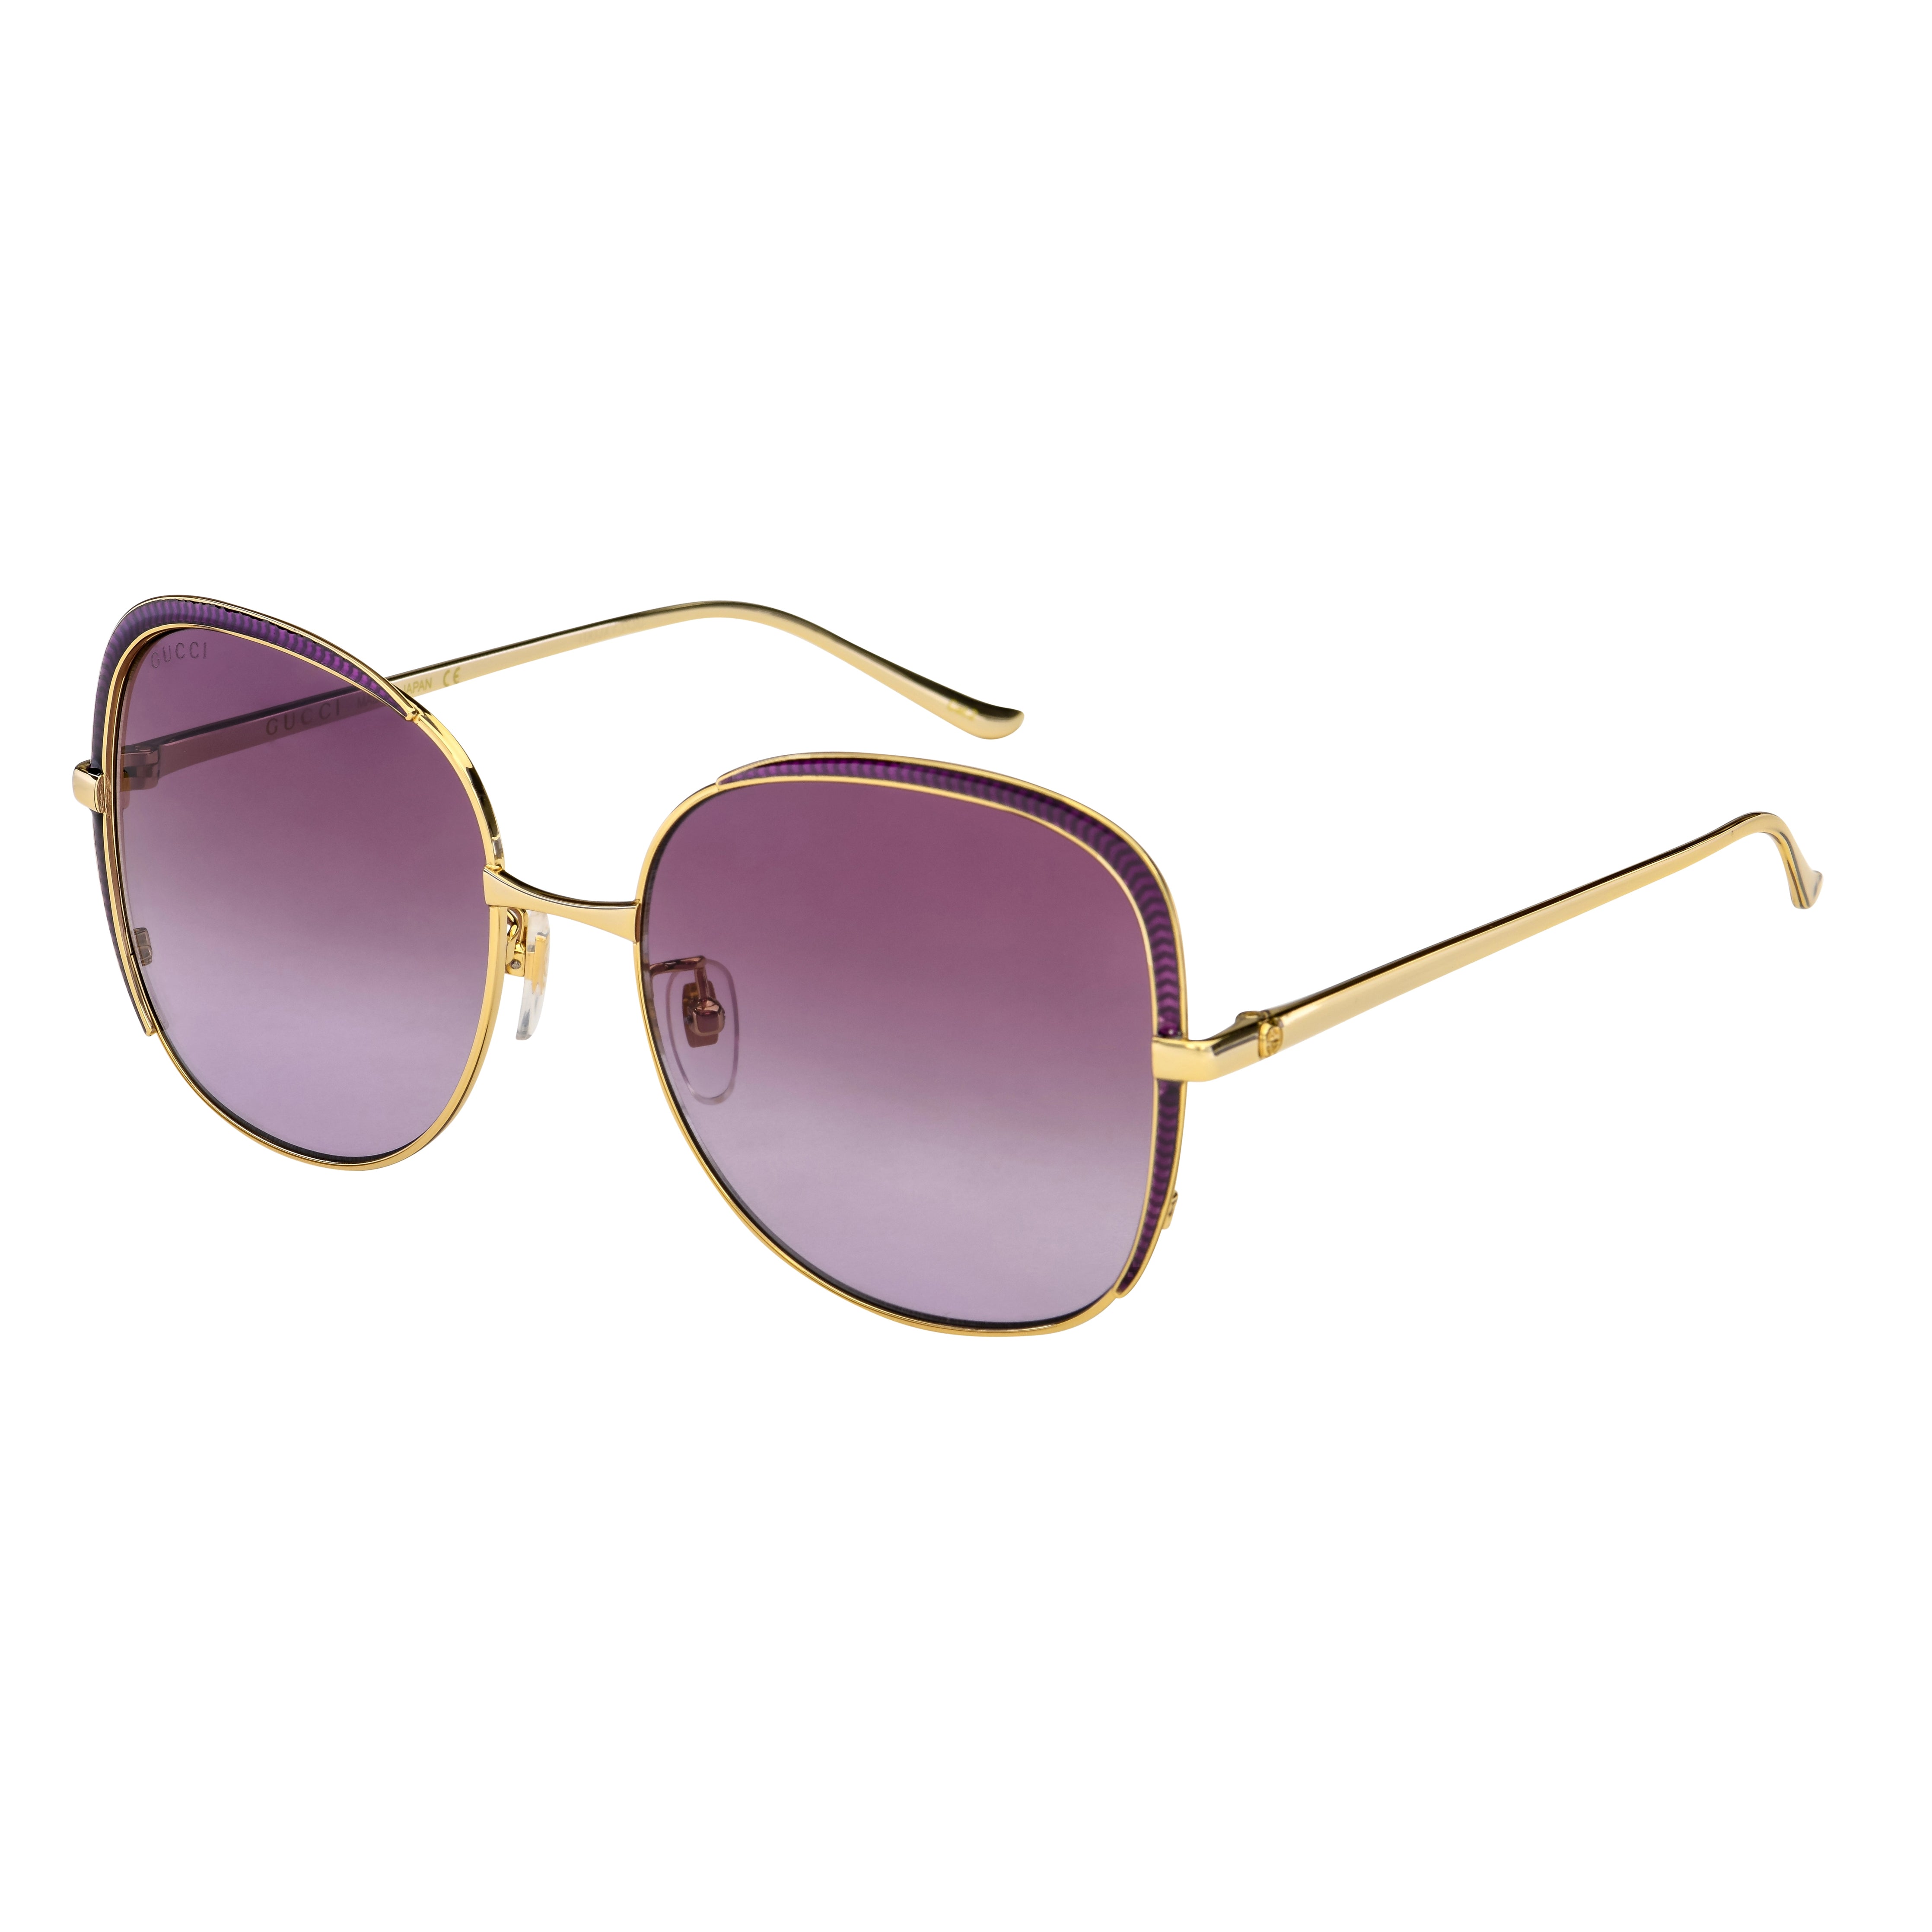 Gucci Women's Sunglasses Oversized Square Gold GG0400S-005 58